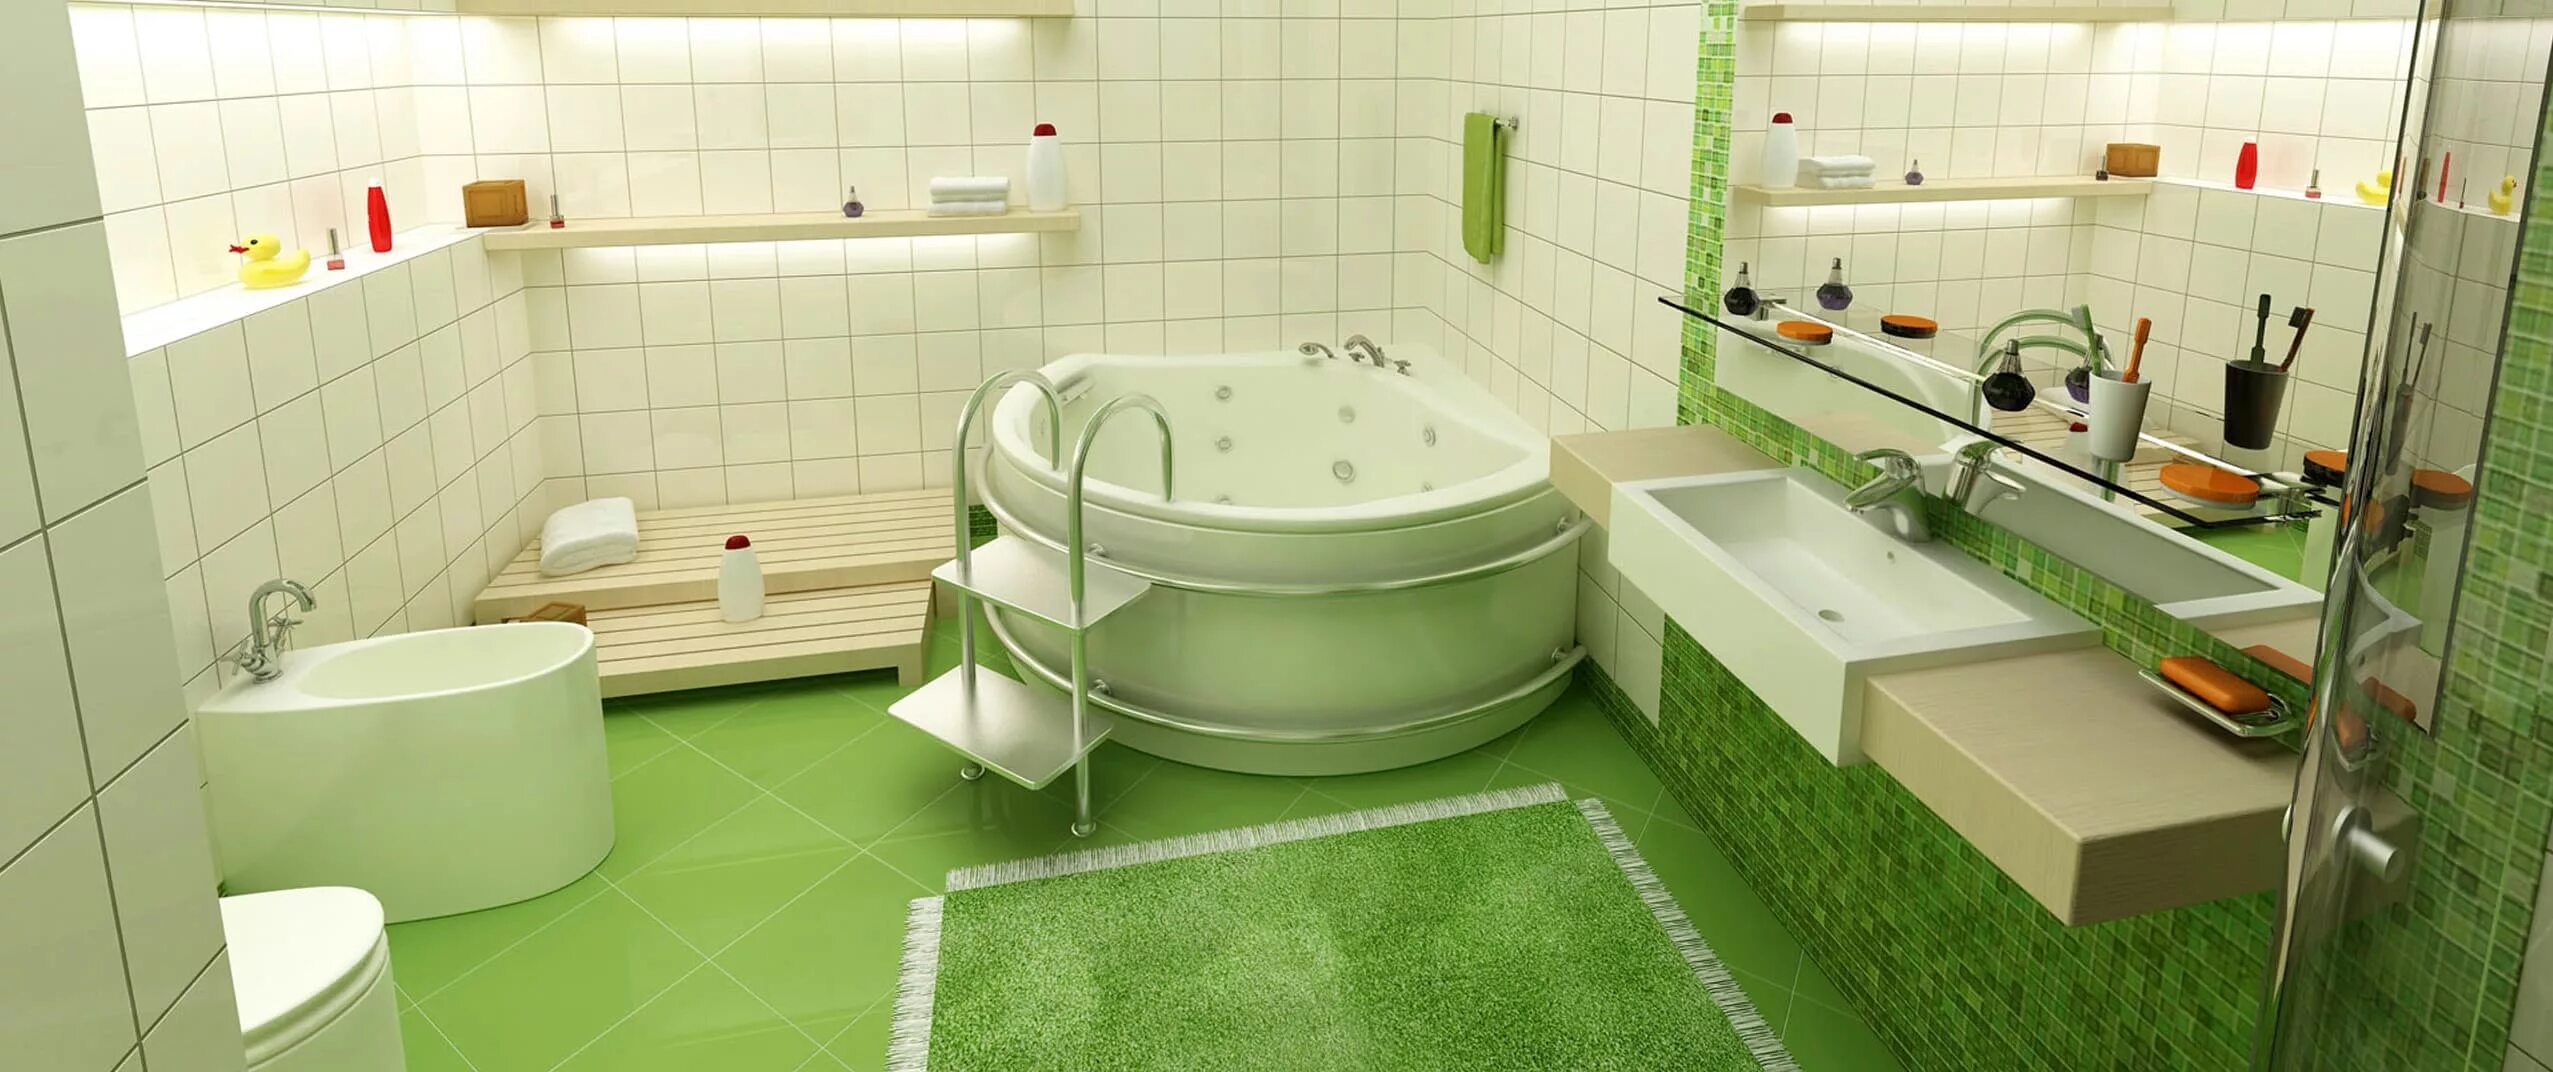 Ванная комната. Дизайн ванной комнаты. Ванная после ремонта. Панорама ванной комнаты.